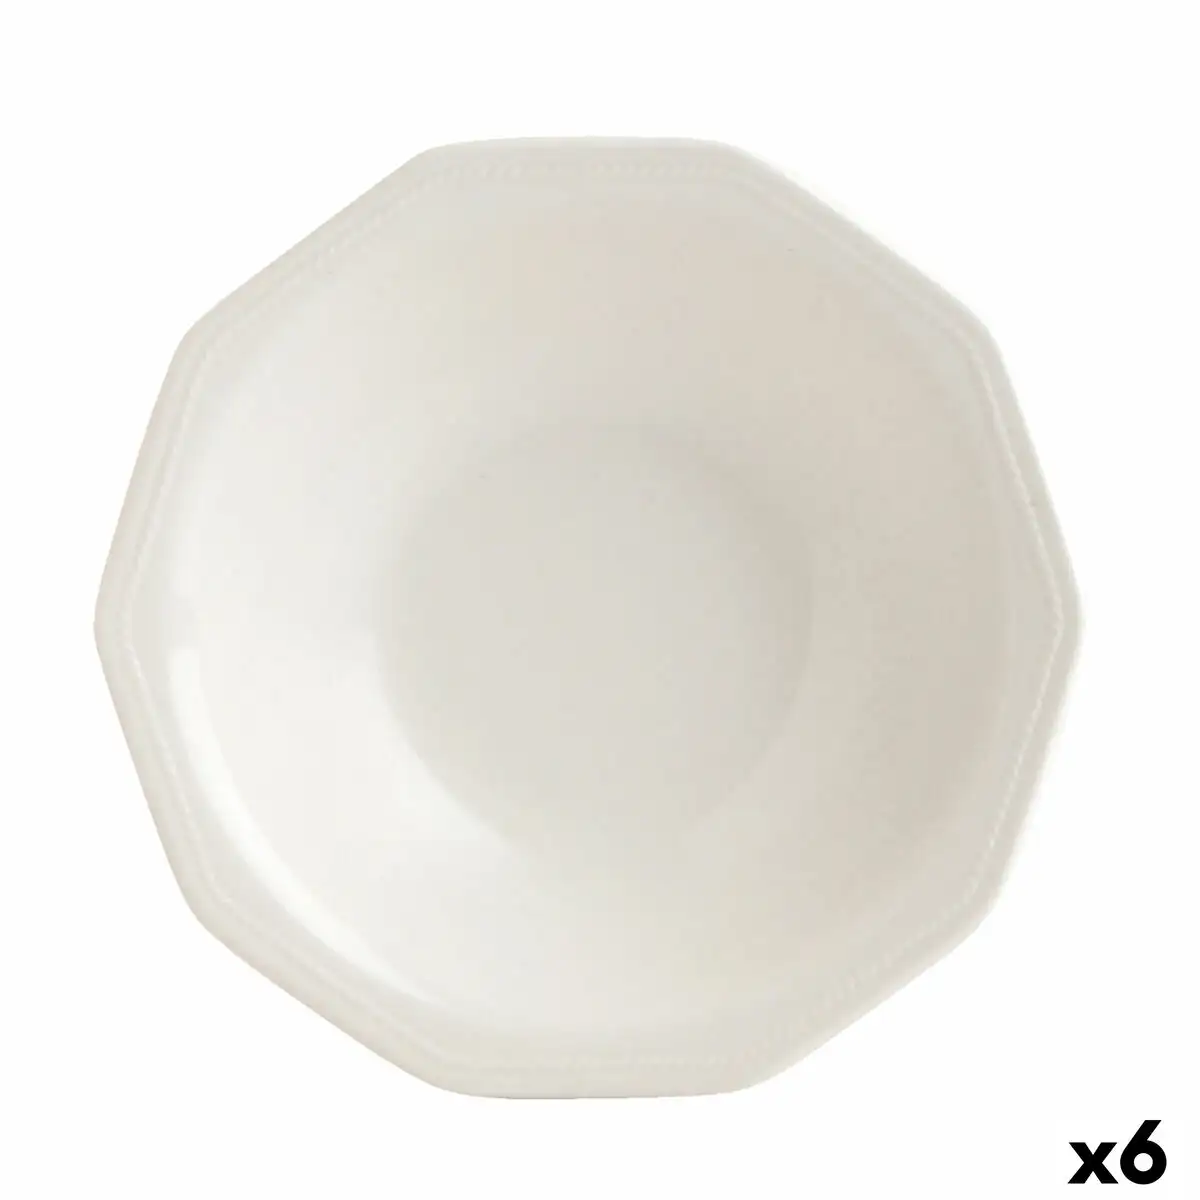 Assiette creuse churchill artic ceramique blanc vaisselle 6 unites o 21 5 cm _4349. Bienvenue sur DIAYTAR SENEGAL - Votre Fenêtre sur le Shopping Moderne. Parcourez notre boutique en ligne et découvrez des produits qui incarnent l'évolution du style et de la qualité.